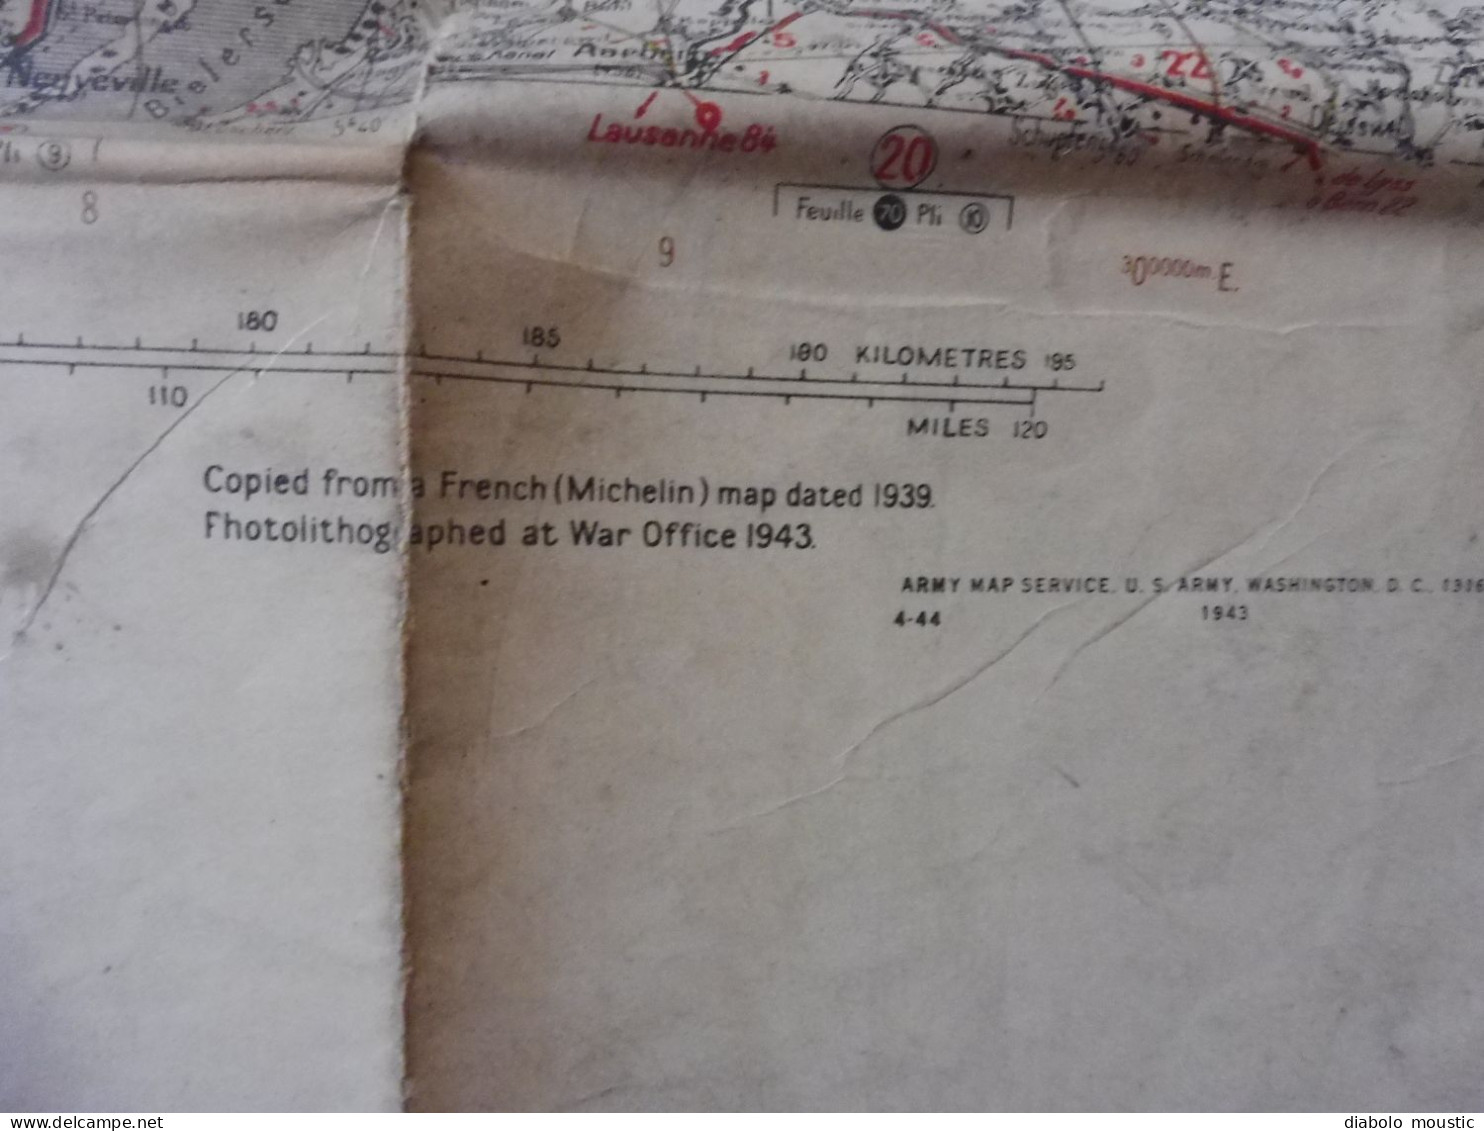 1943  SHEET 66   Carte de guerre DIJON - MULHOUSE  firts edition published by War Office  Dim. 116cm x 70cm